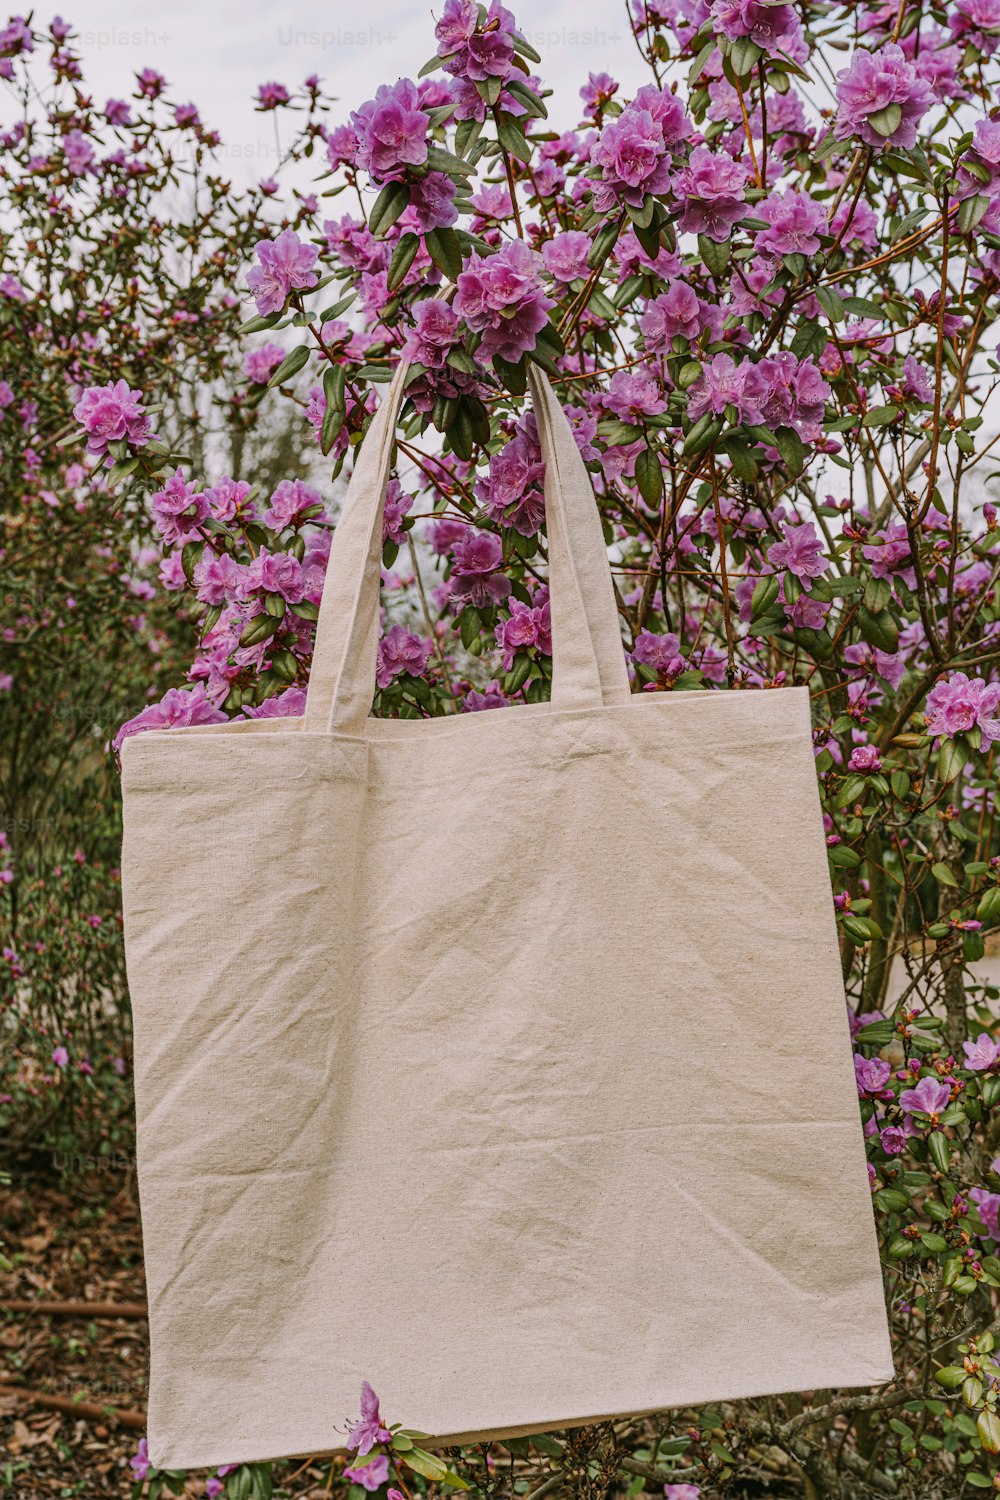 Una bolsa blanca colgando de un árbol lleno de flores púrpuras